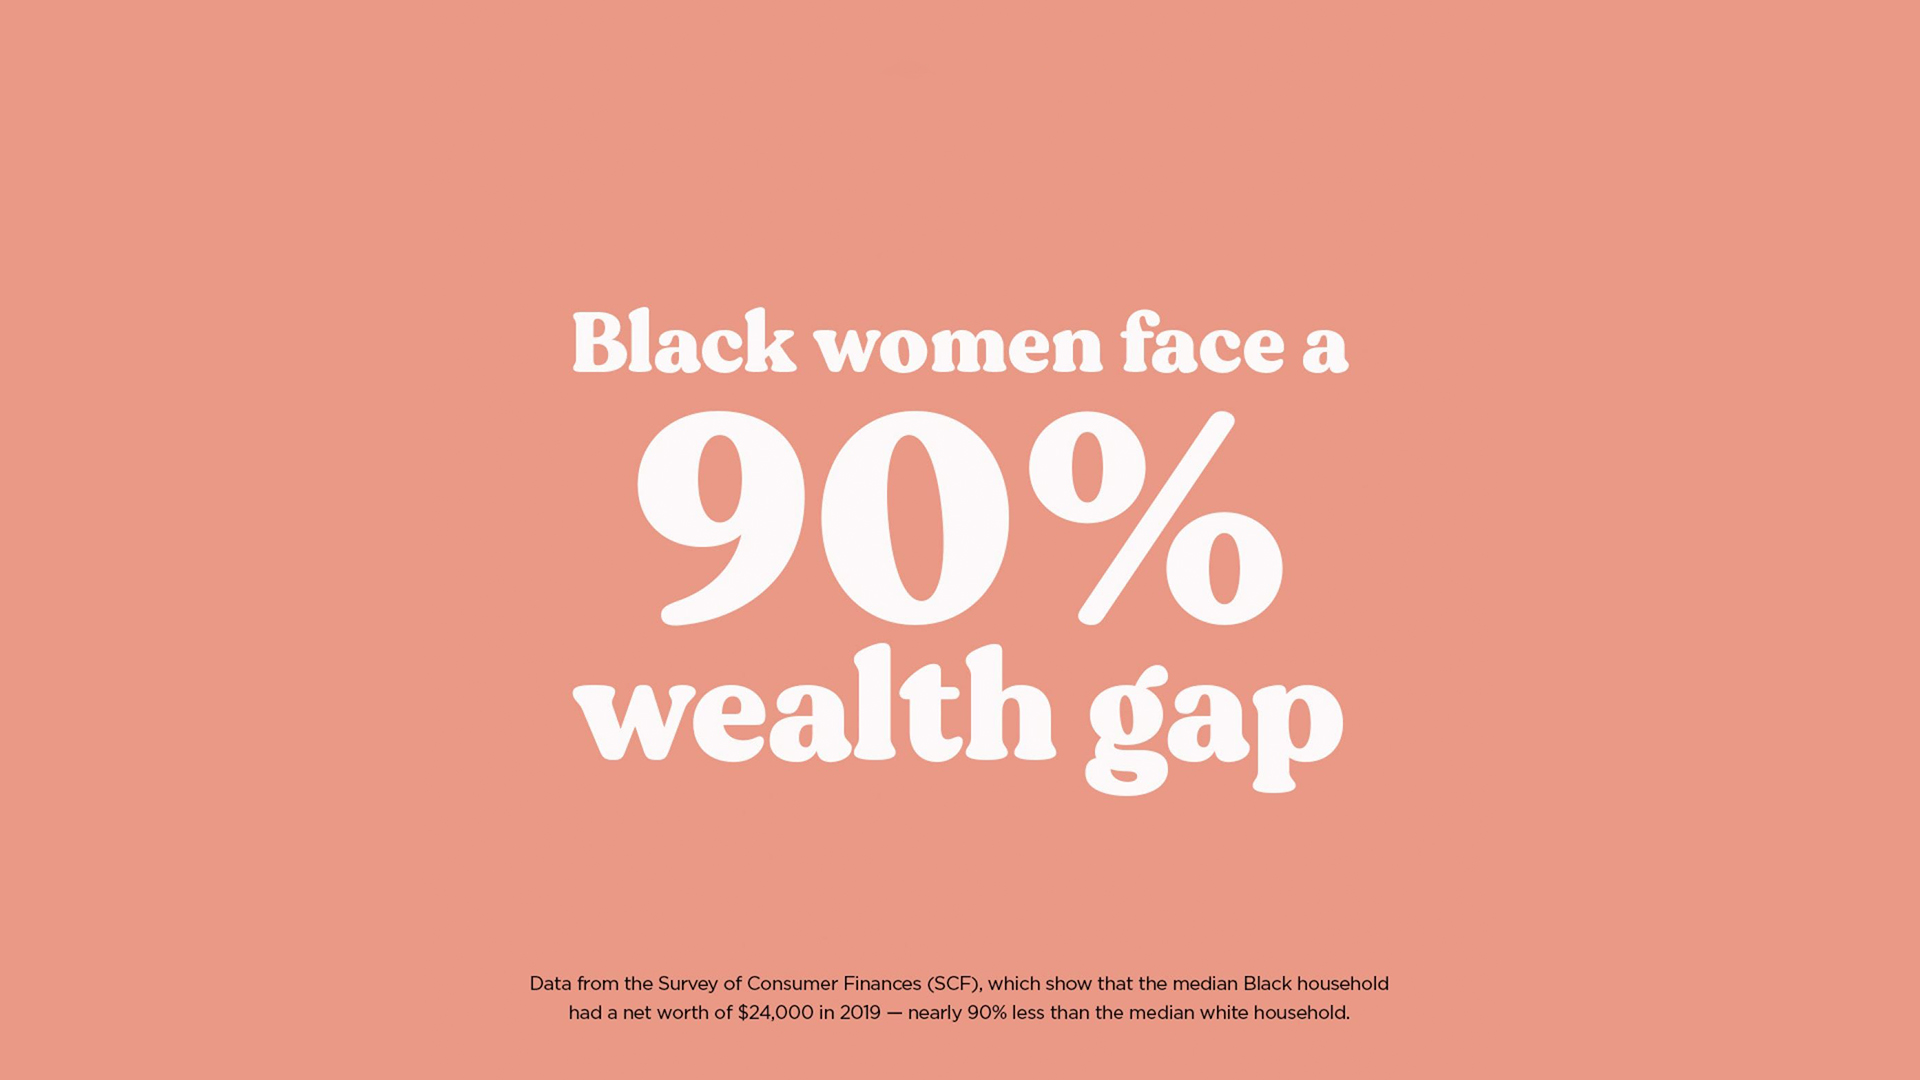 Black women face a 90% wealth gap